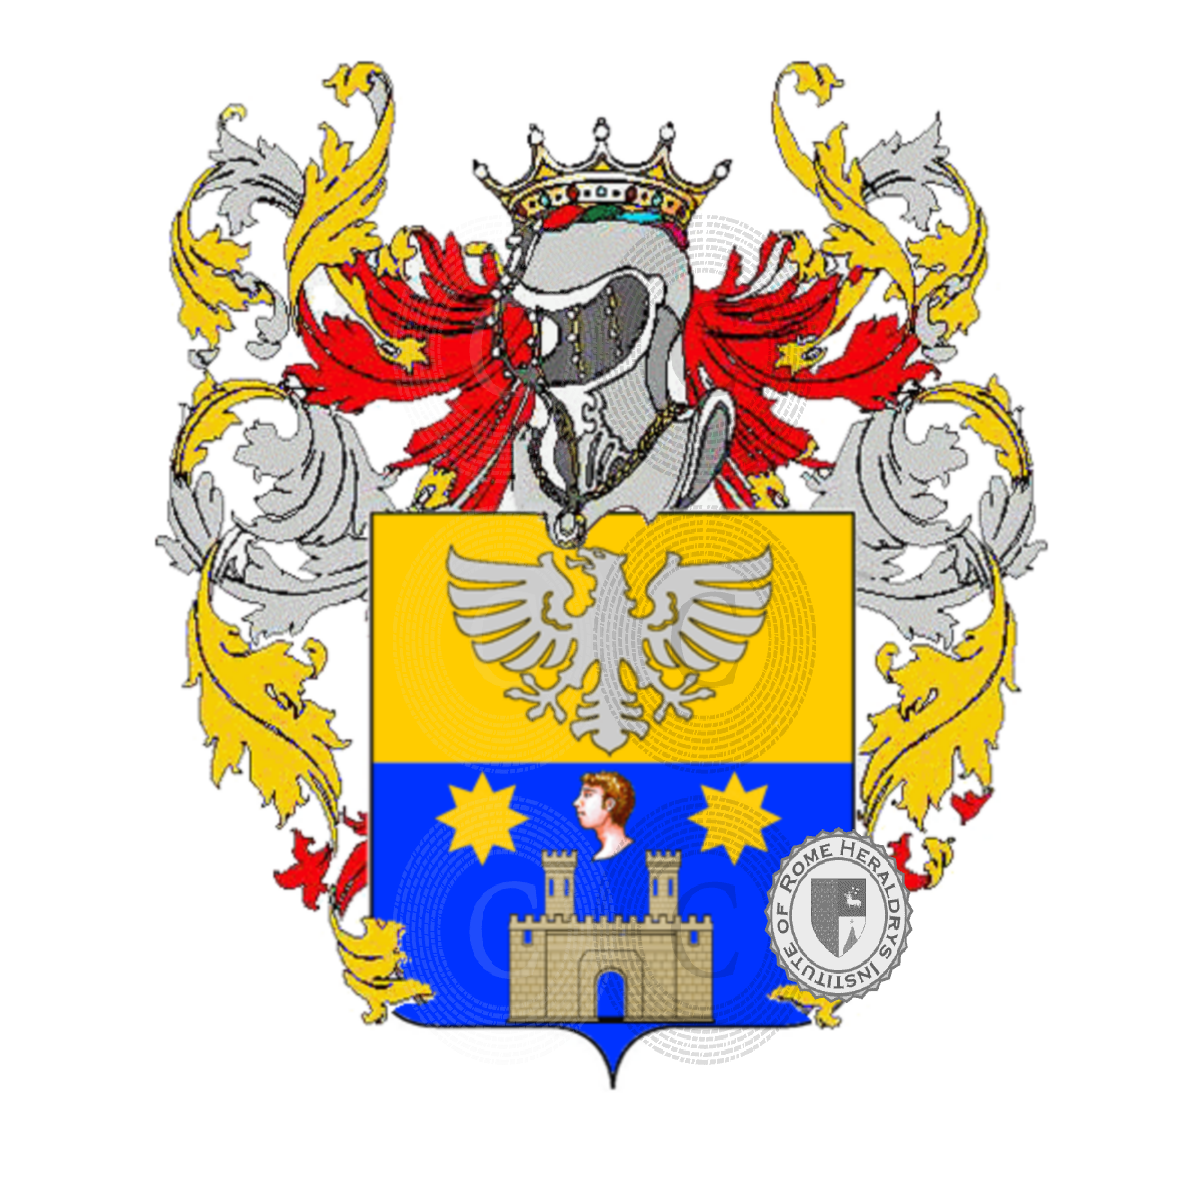 Wappen der Familietognoni    